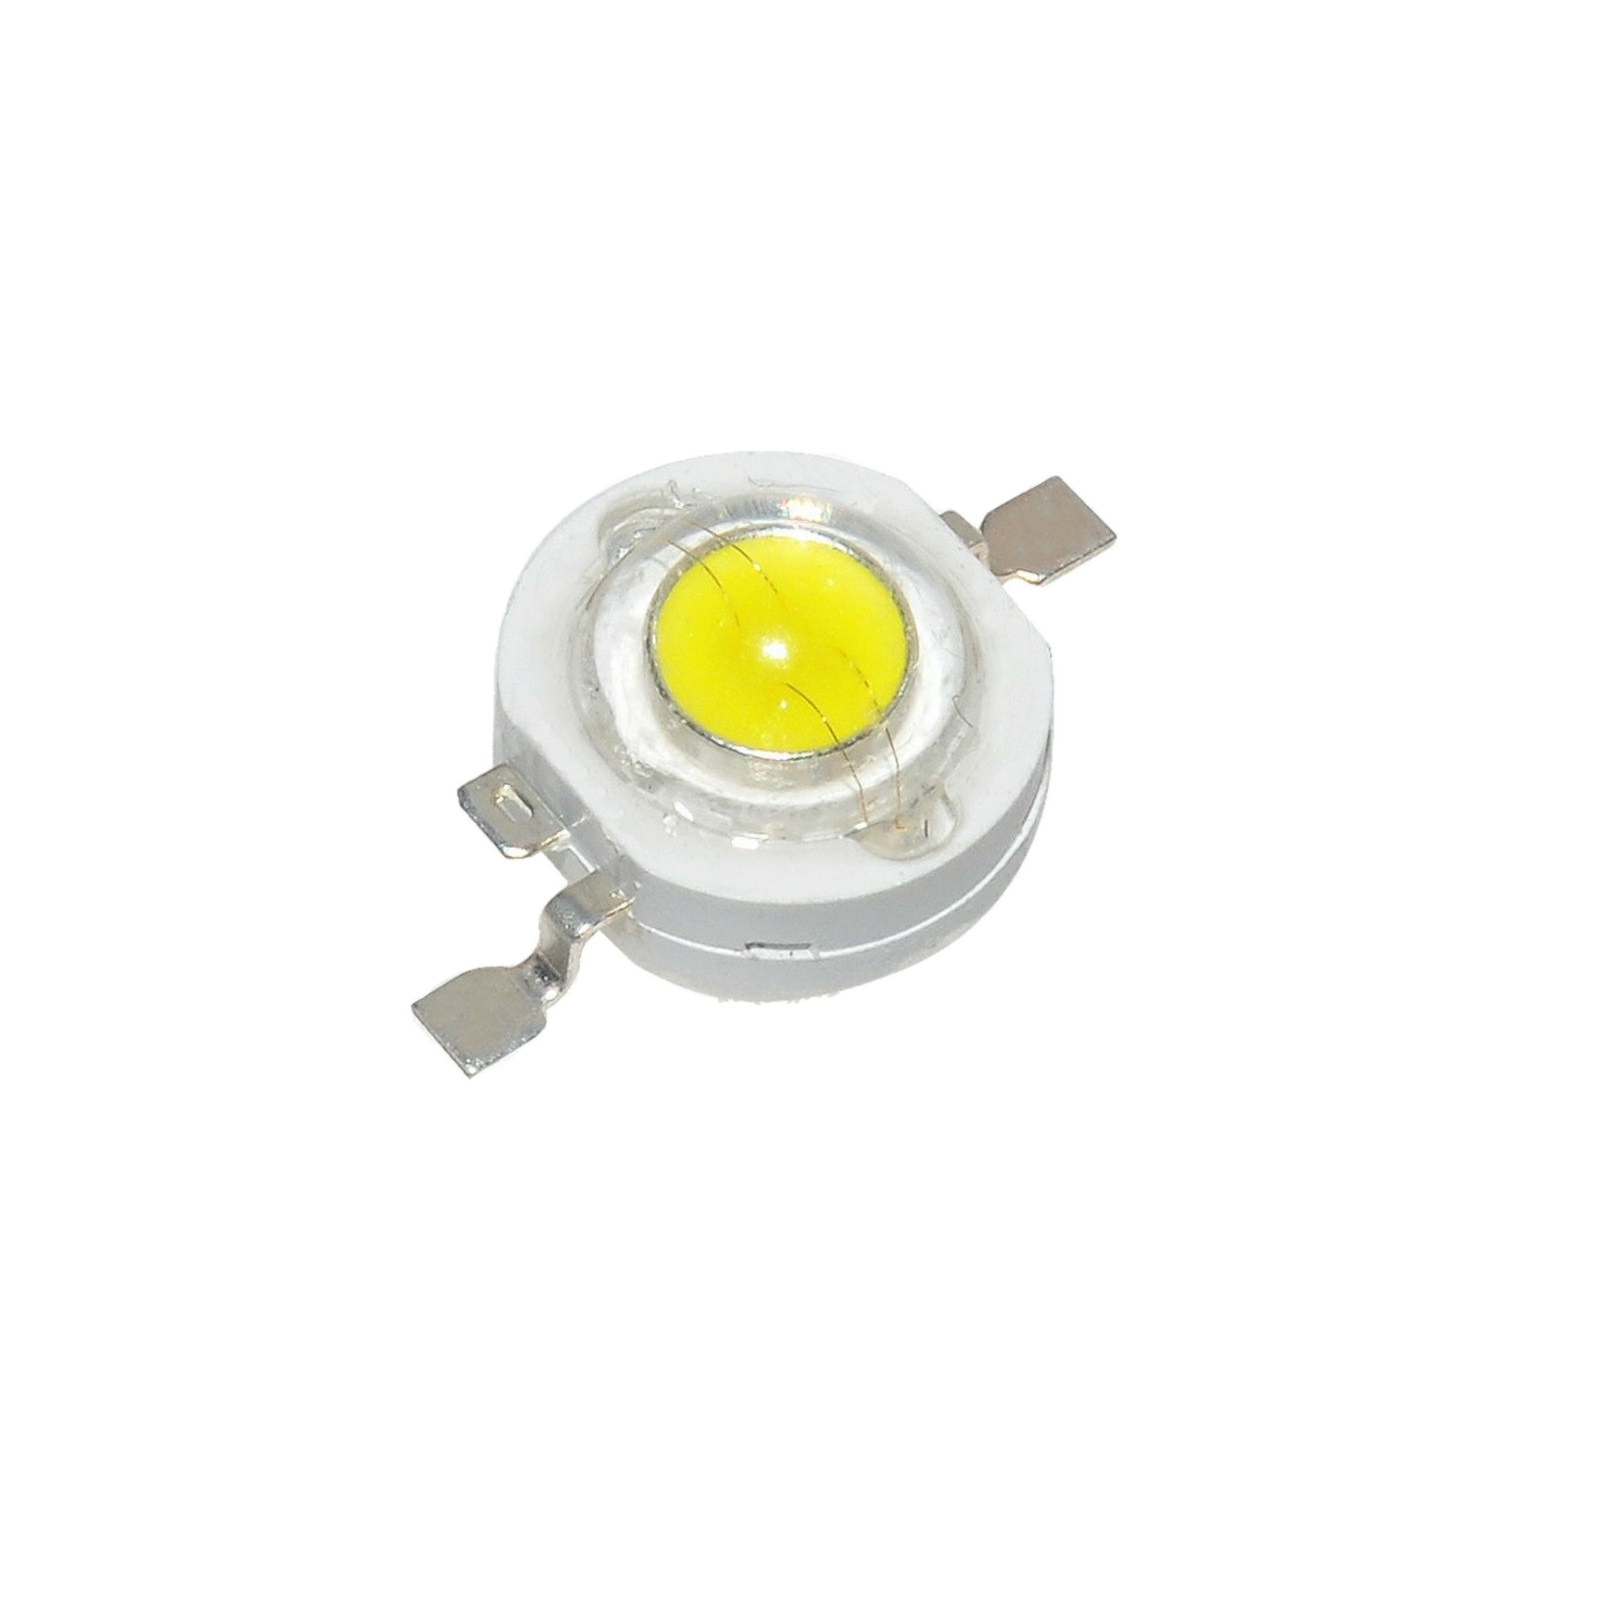 لامپ چراغ قوه 3 وات مدل s2022